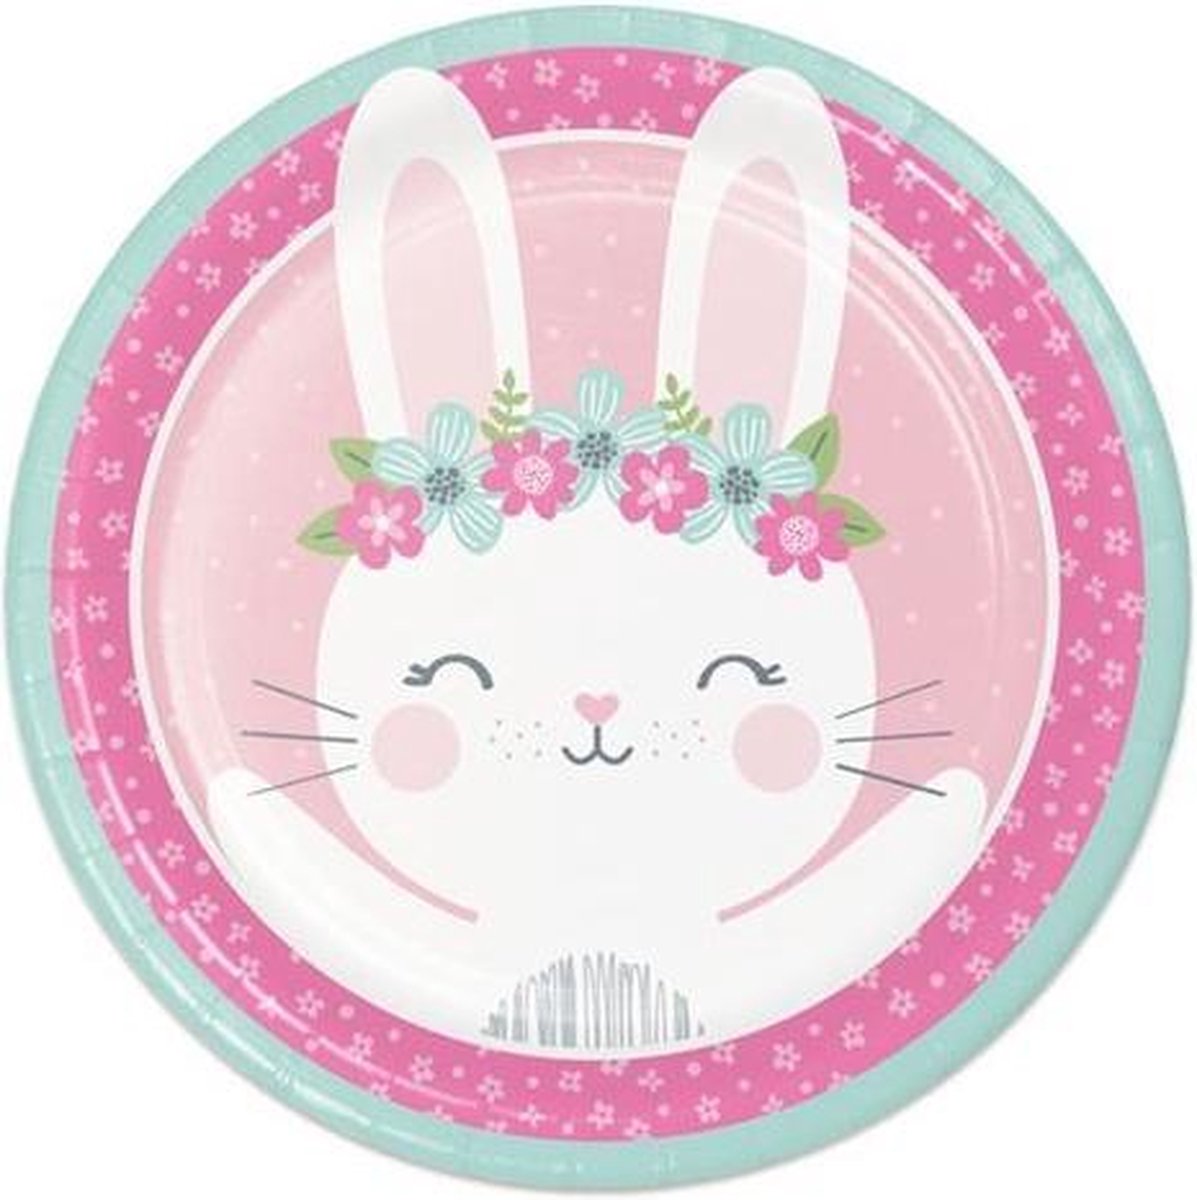 Witbaard Feestborden Bunny 23 Cm Karton Wit/roze 8 Stuks